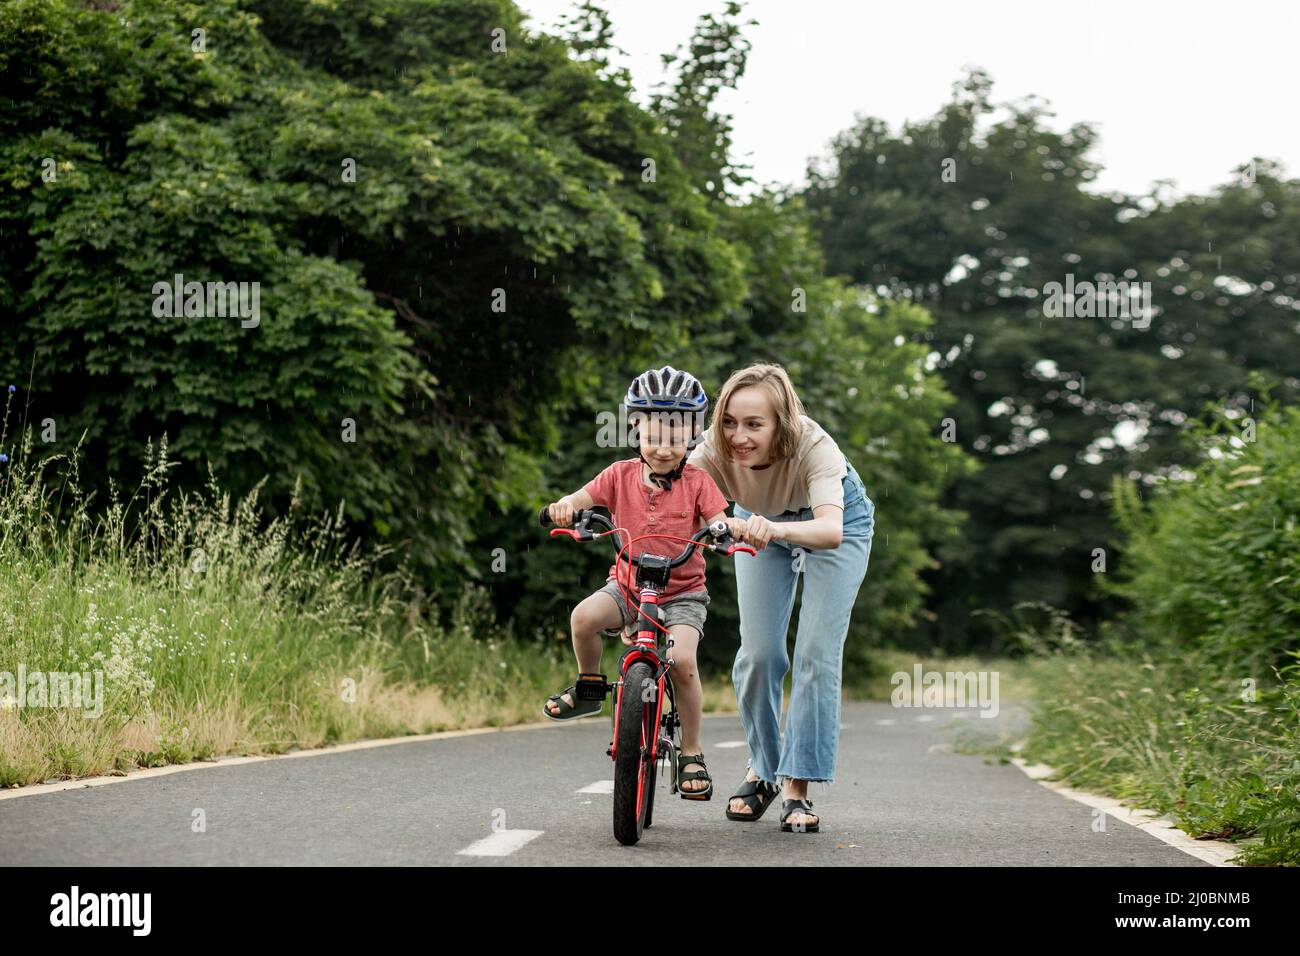 Niño Niño Pequeño De 2 Años Aprendiendo A Montar En Su Bicicleta Primero  Fotos, retratos, imágenes y fotografía de archivo libres de derecho. Image  17034715